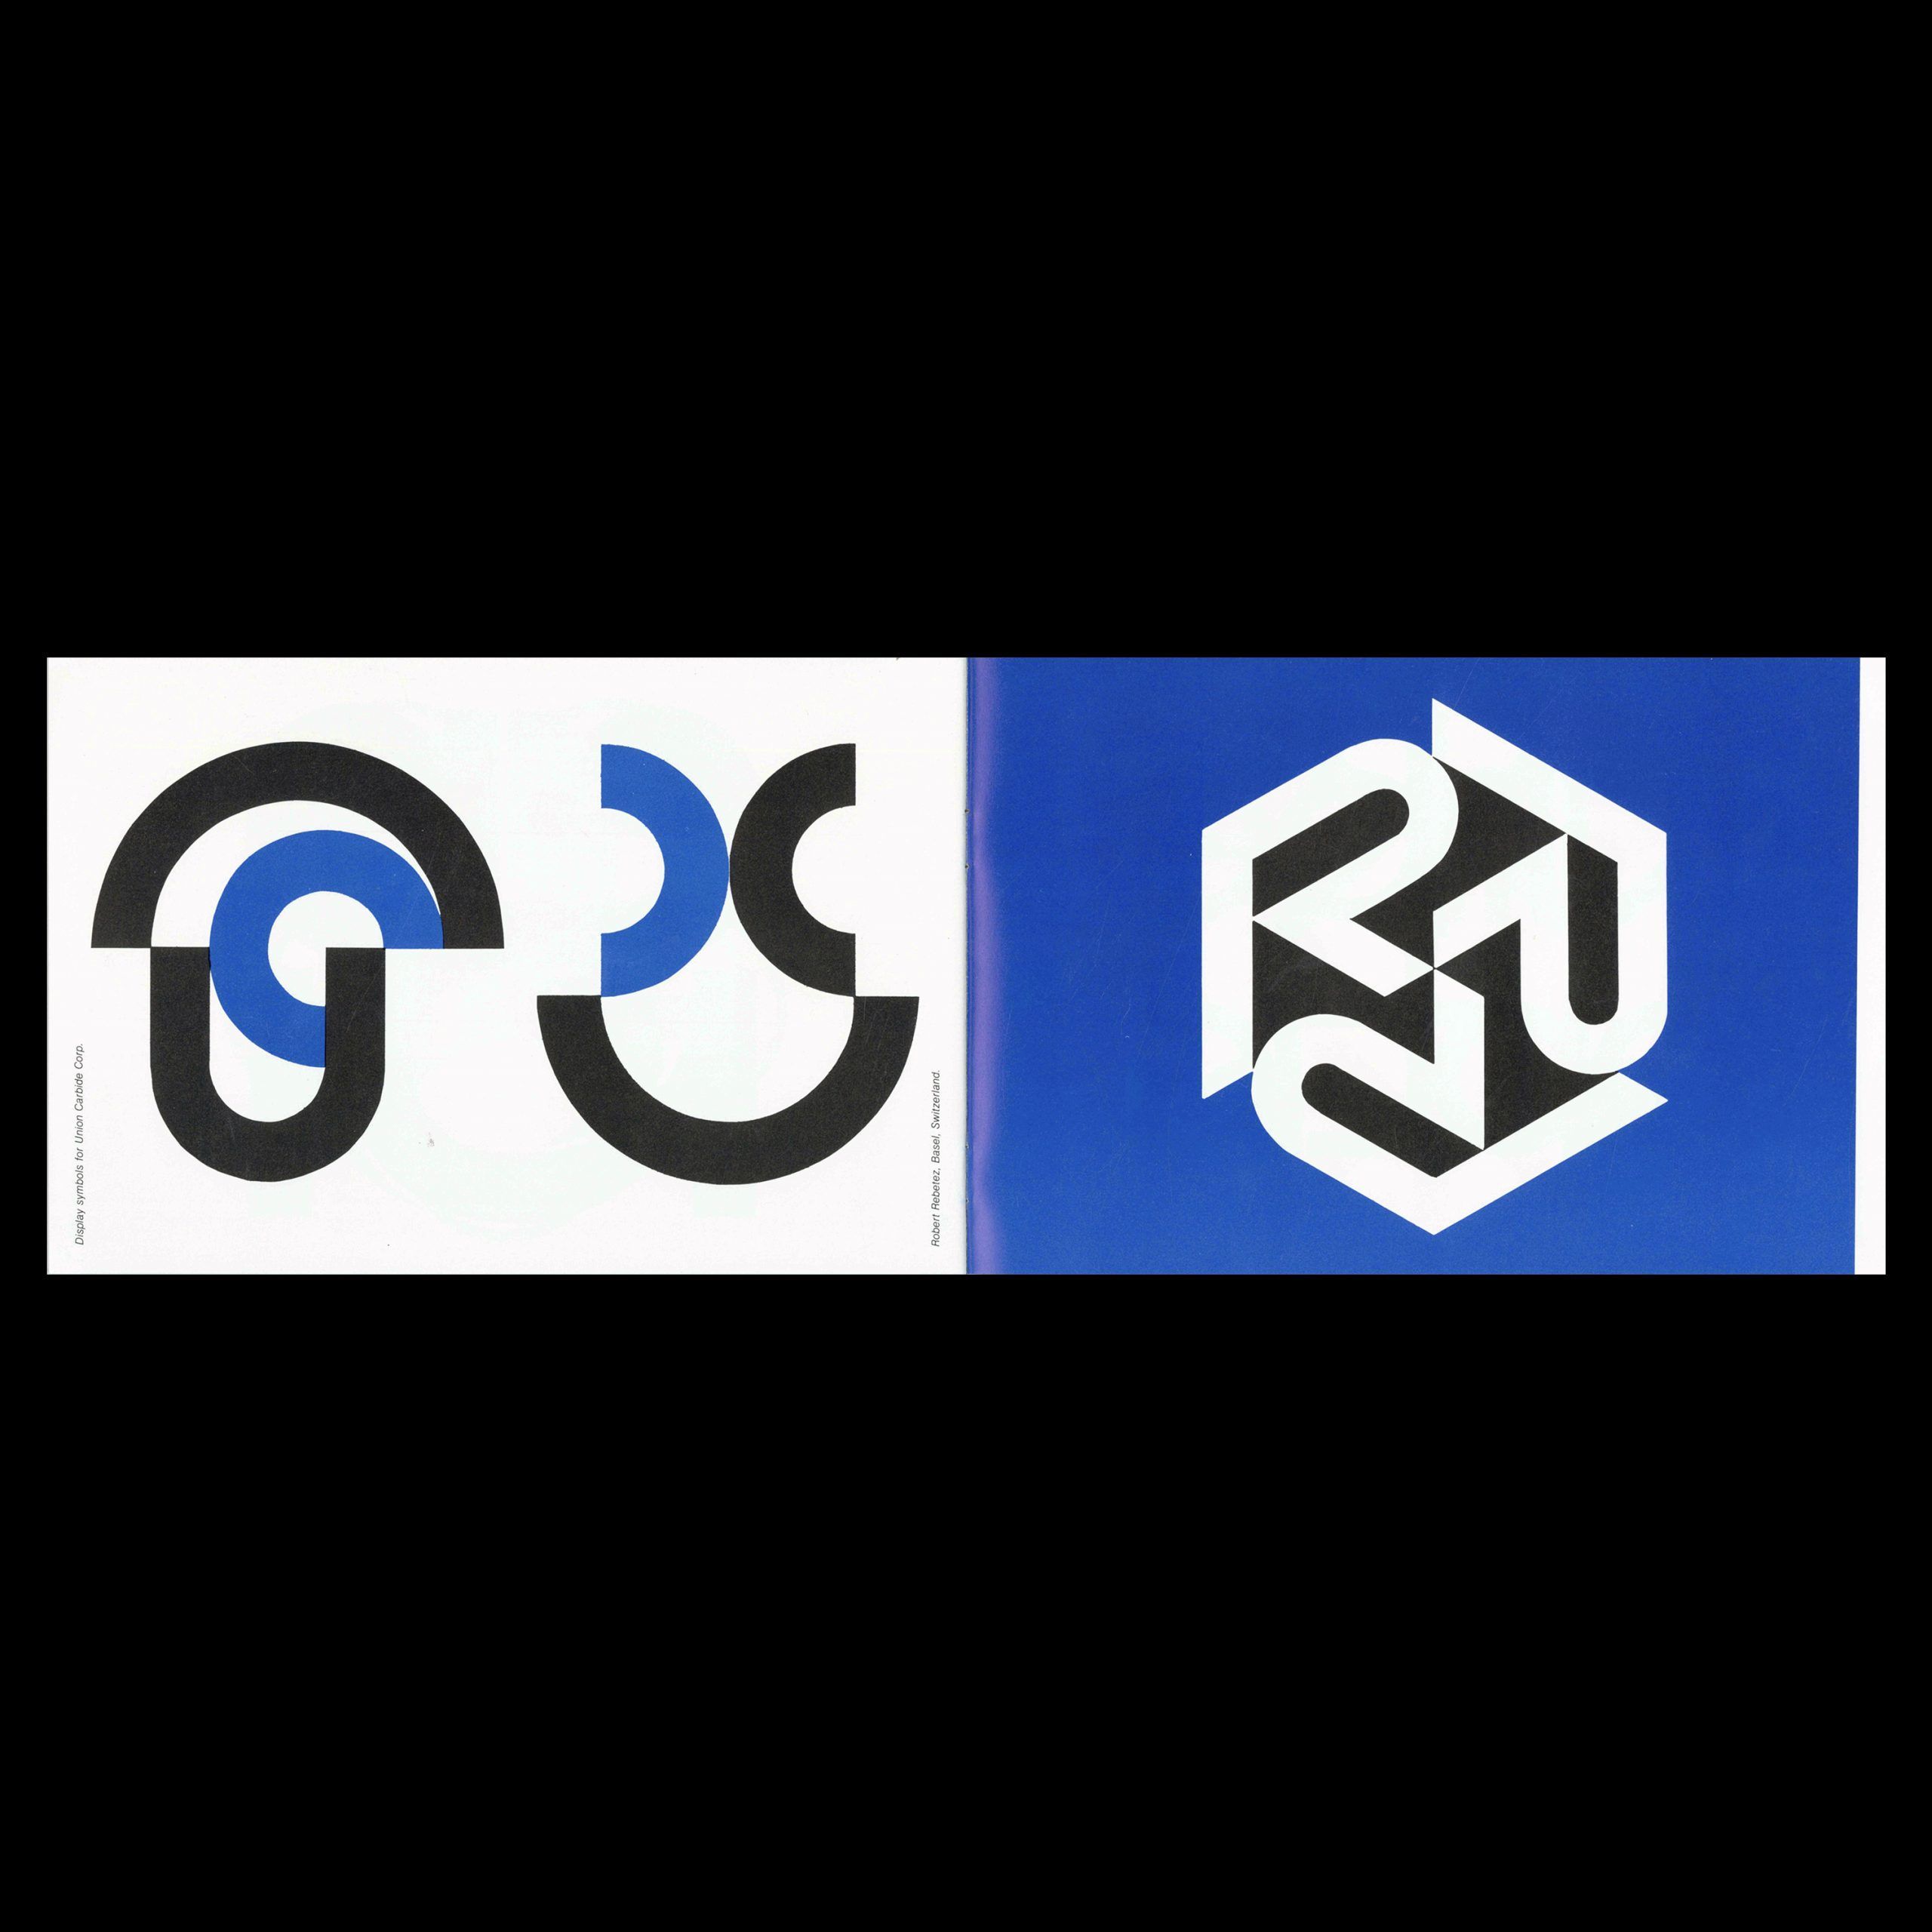 Symbols Signs Logos Trademarks by Herbert Matter, 1977